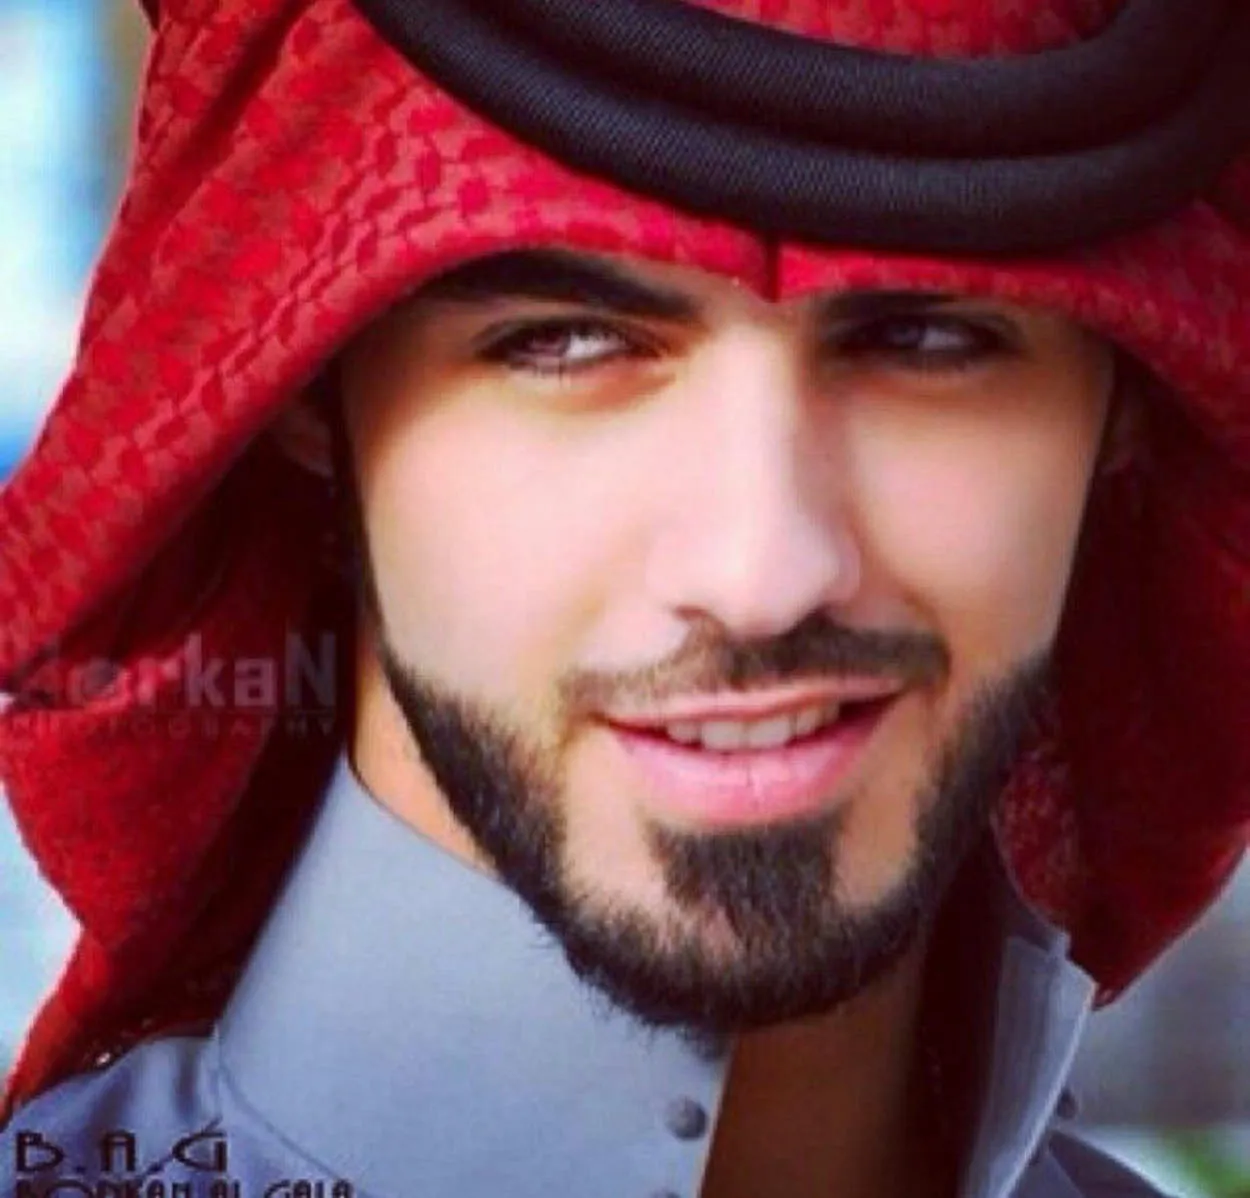 Oman handsome boy or actor